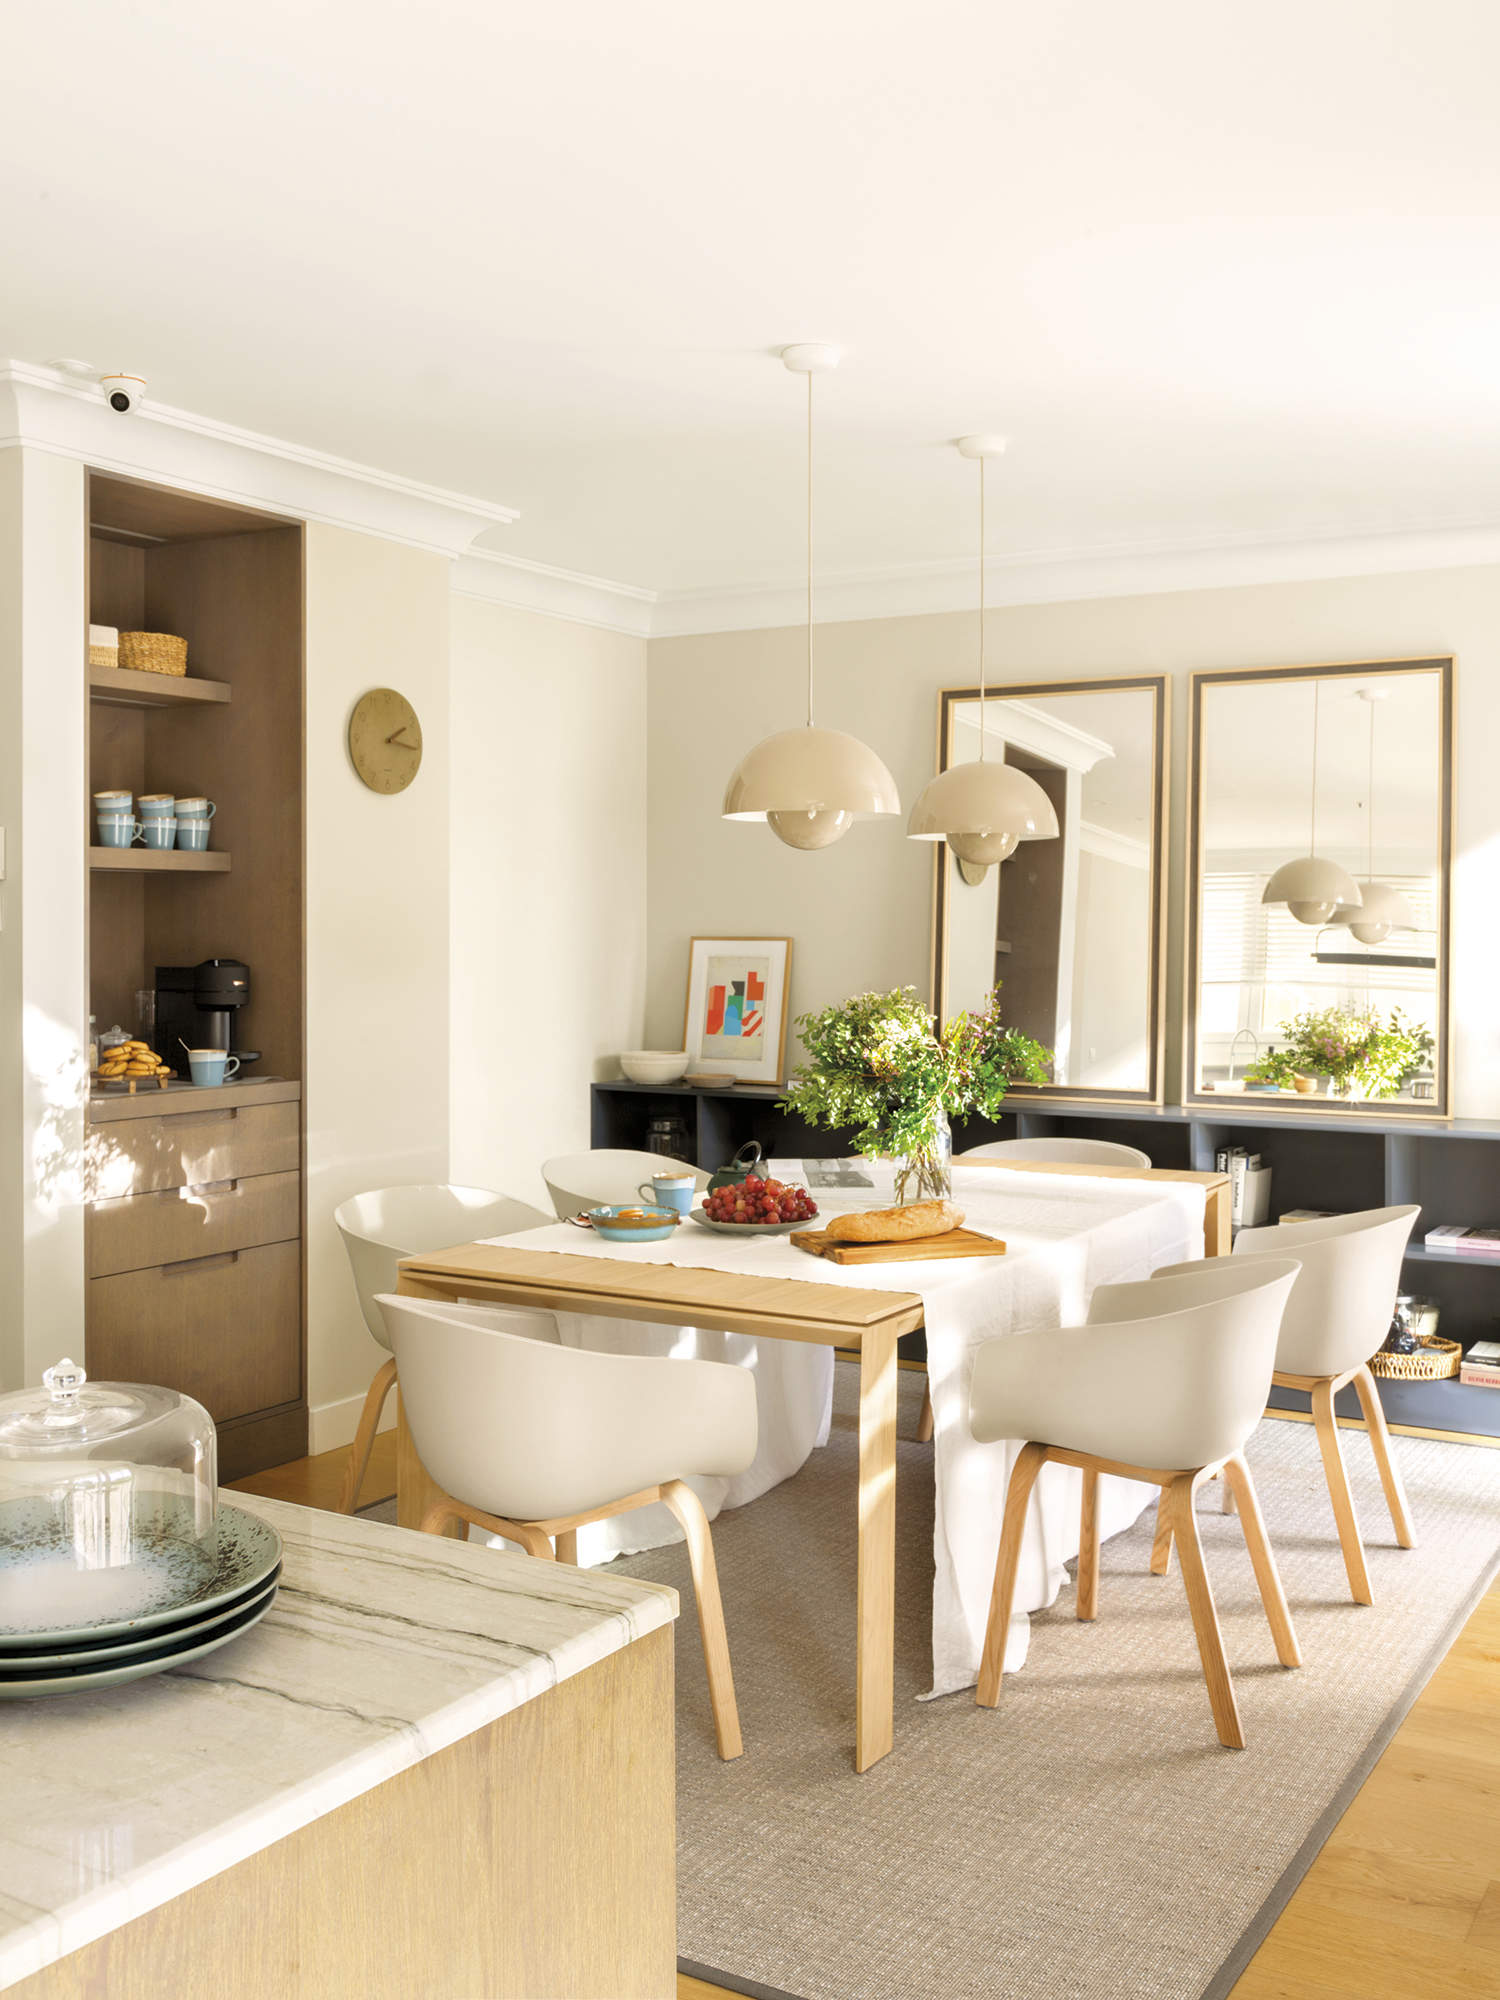 Cocina con isla y office, mesa de madera rectangular con sillas blancas, espejo, alfombra y mueble a medida.